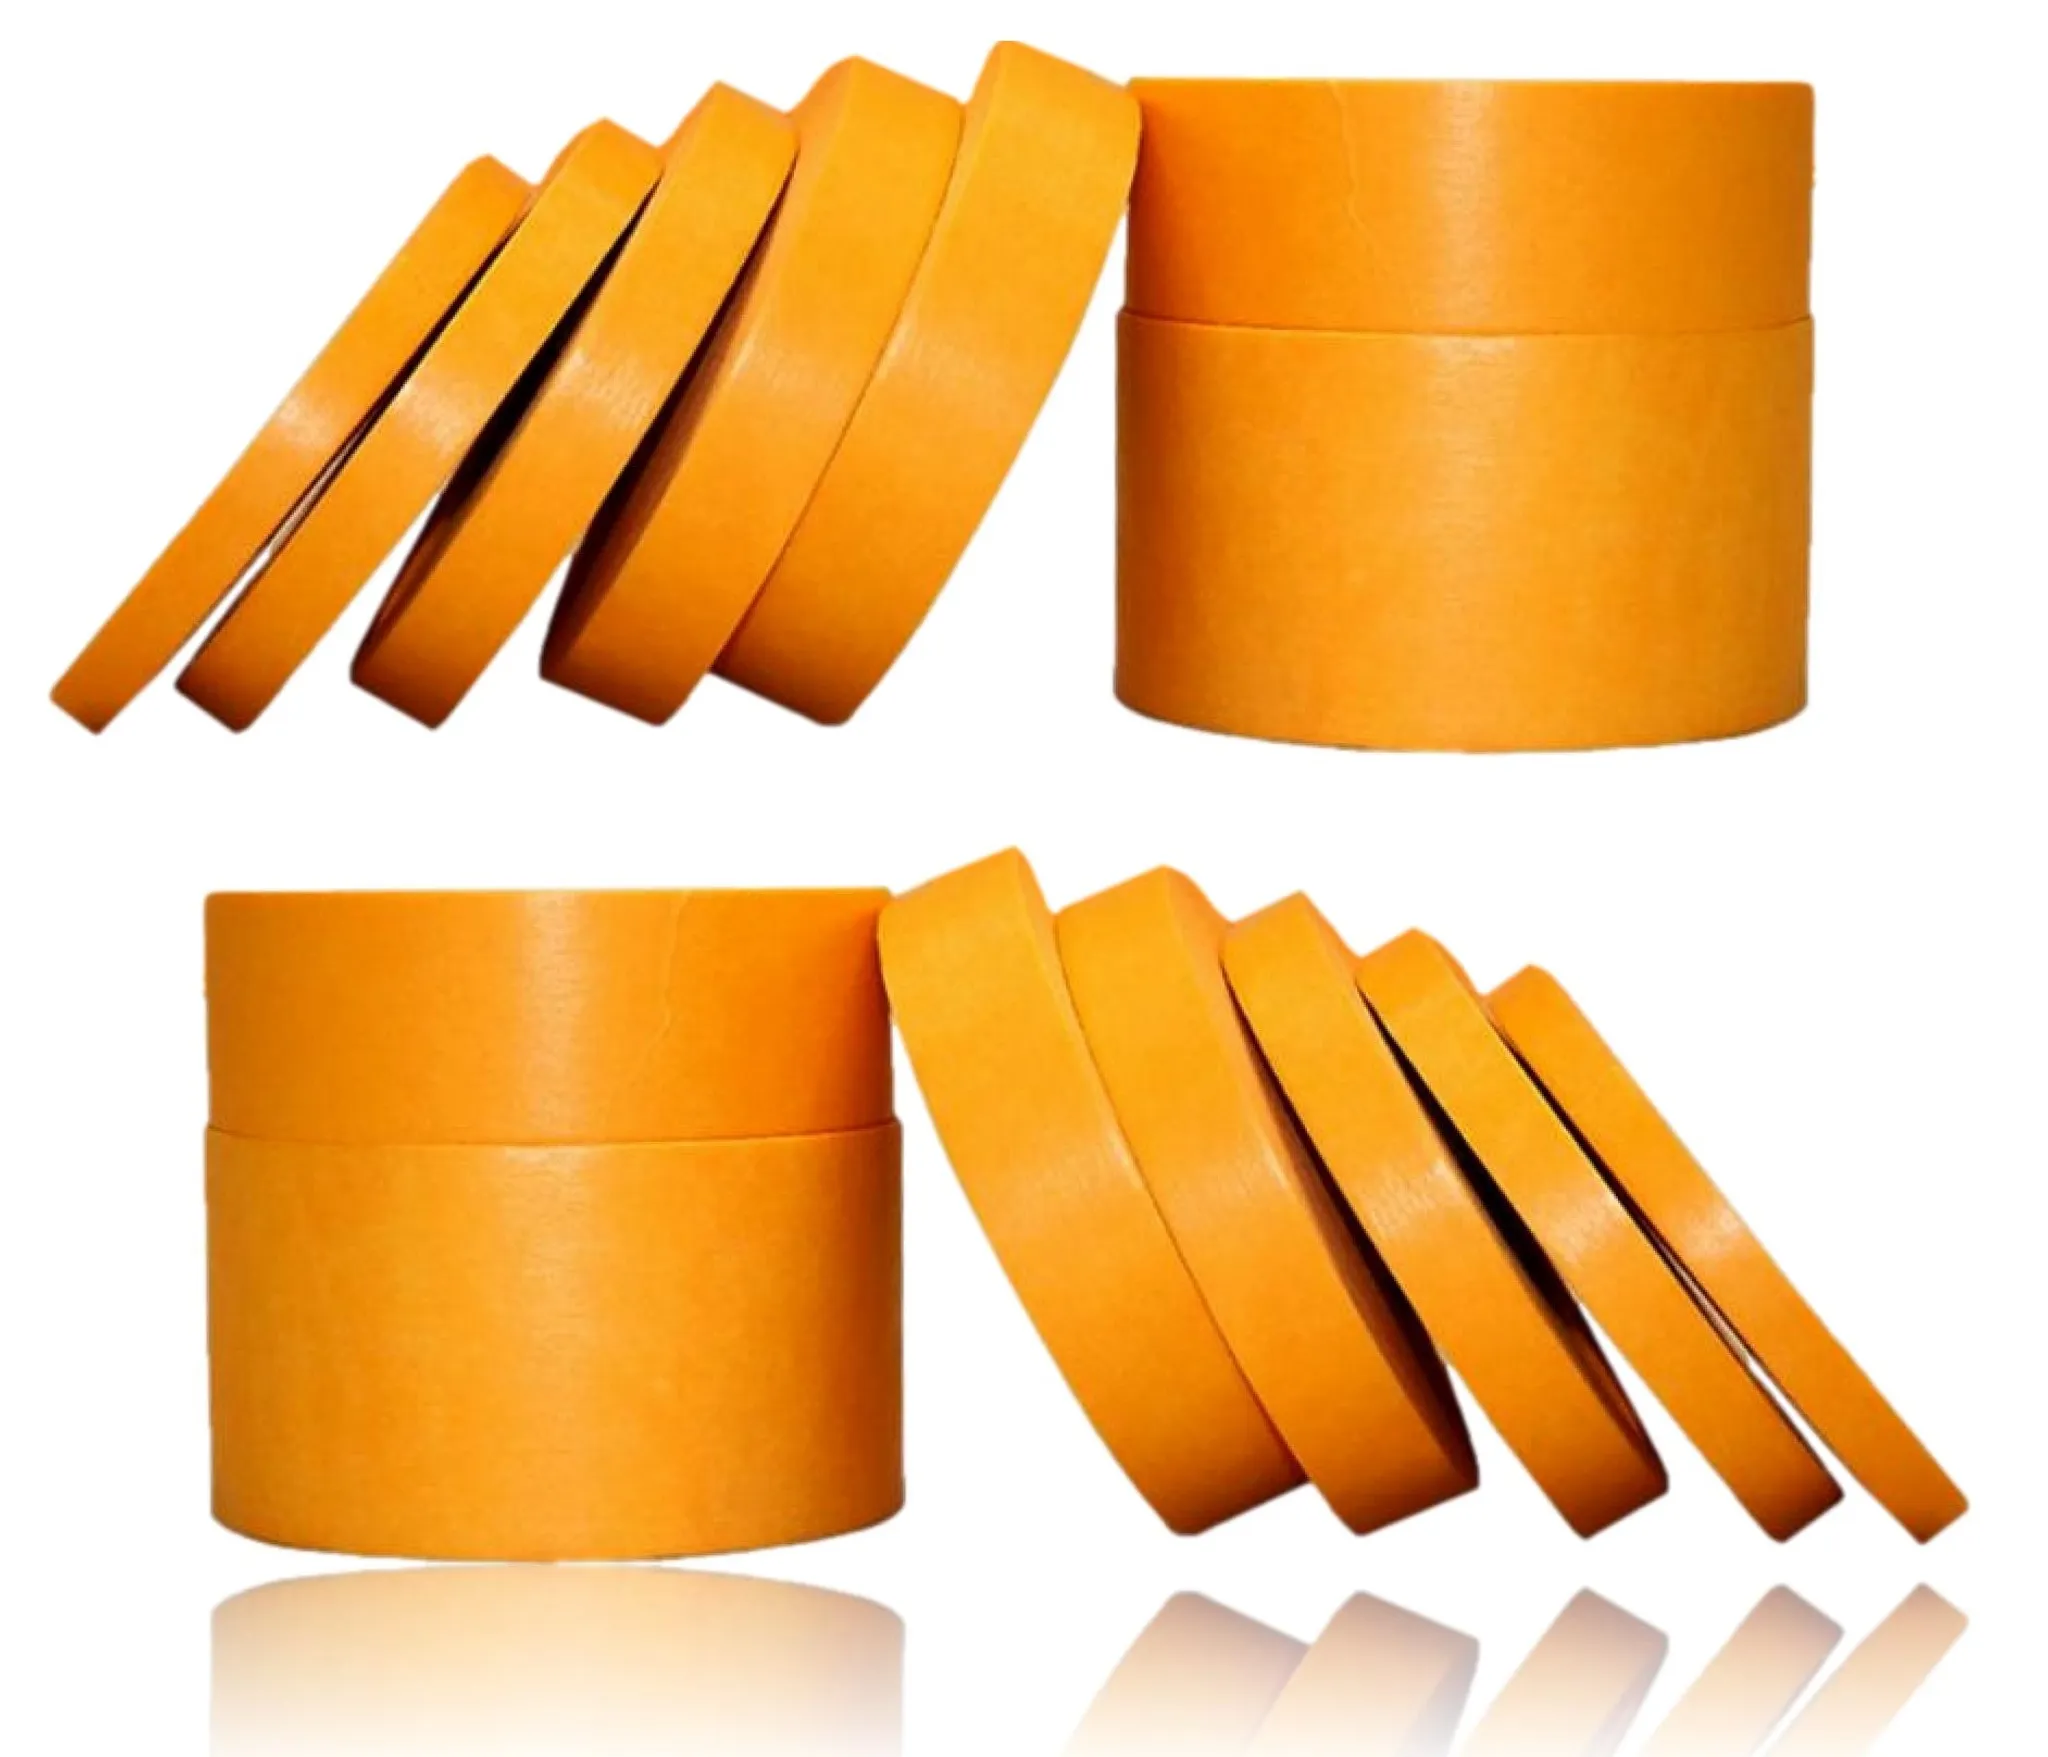 Profi Goldband Washi Tape UV 90 Klebeband 50m 25 mm breite